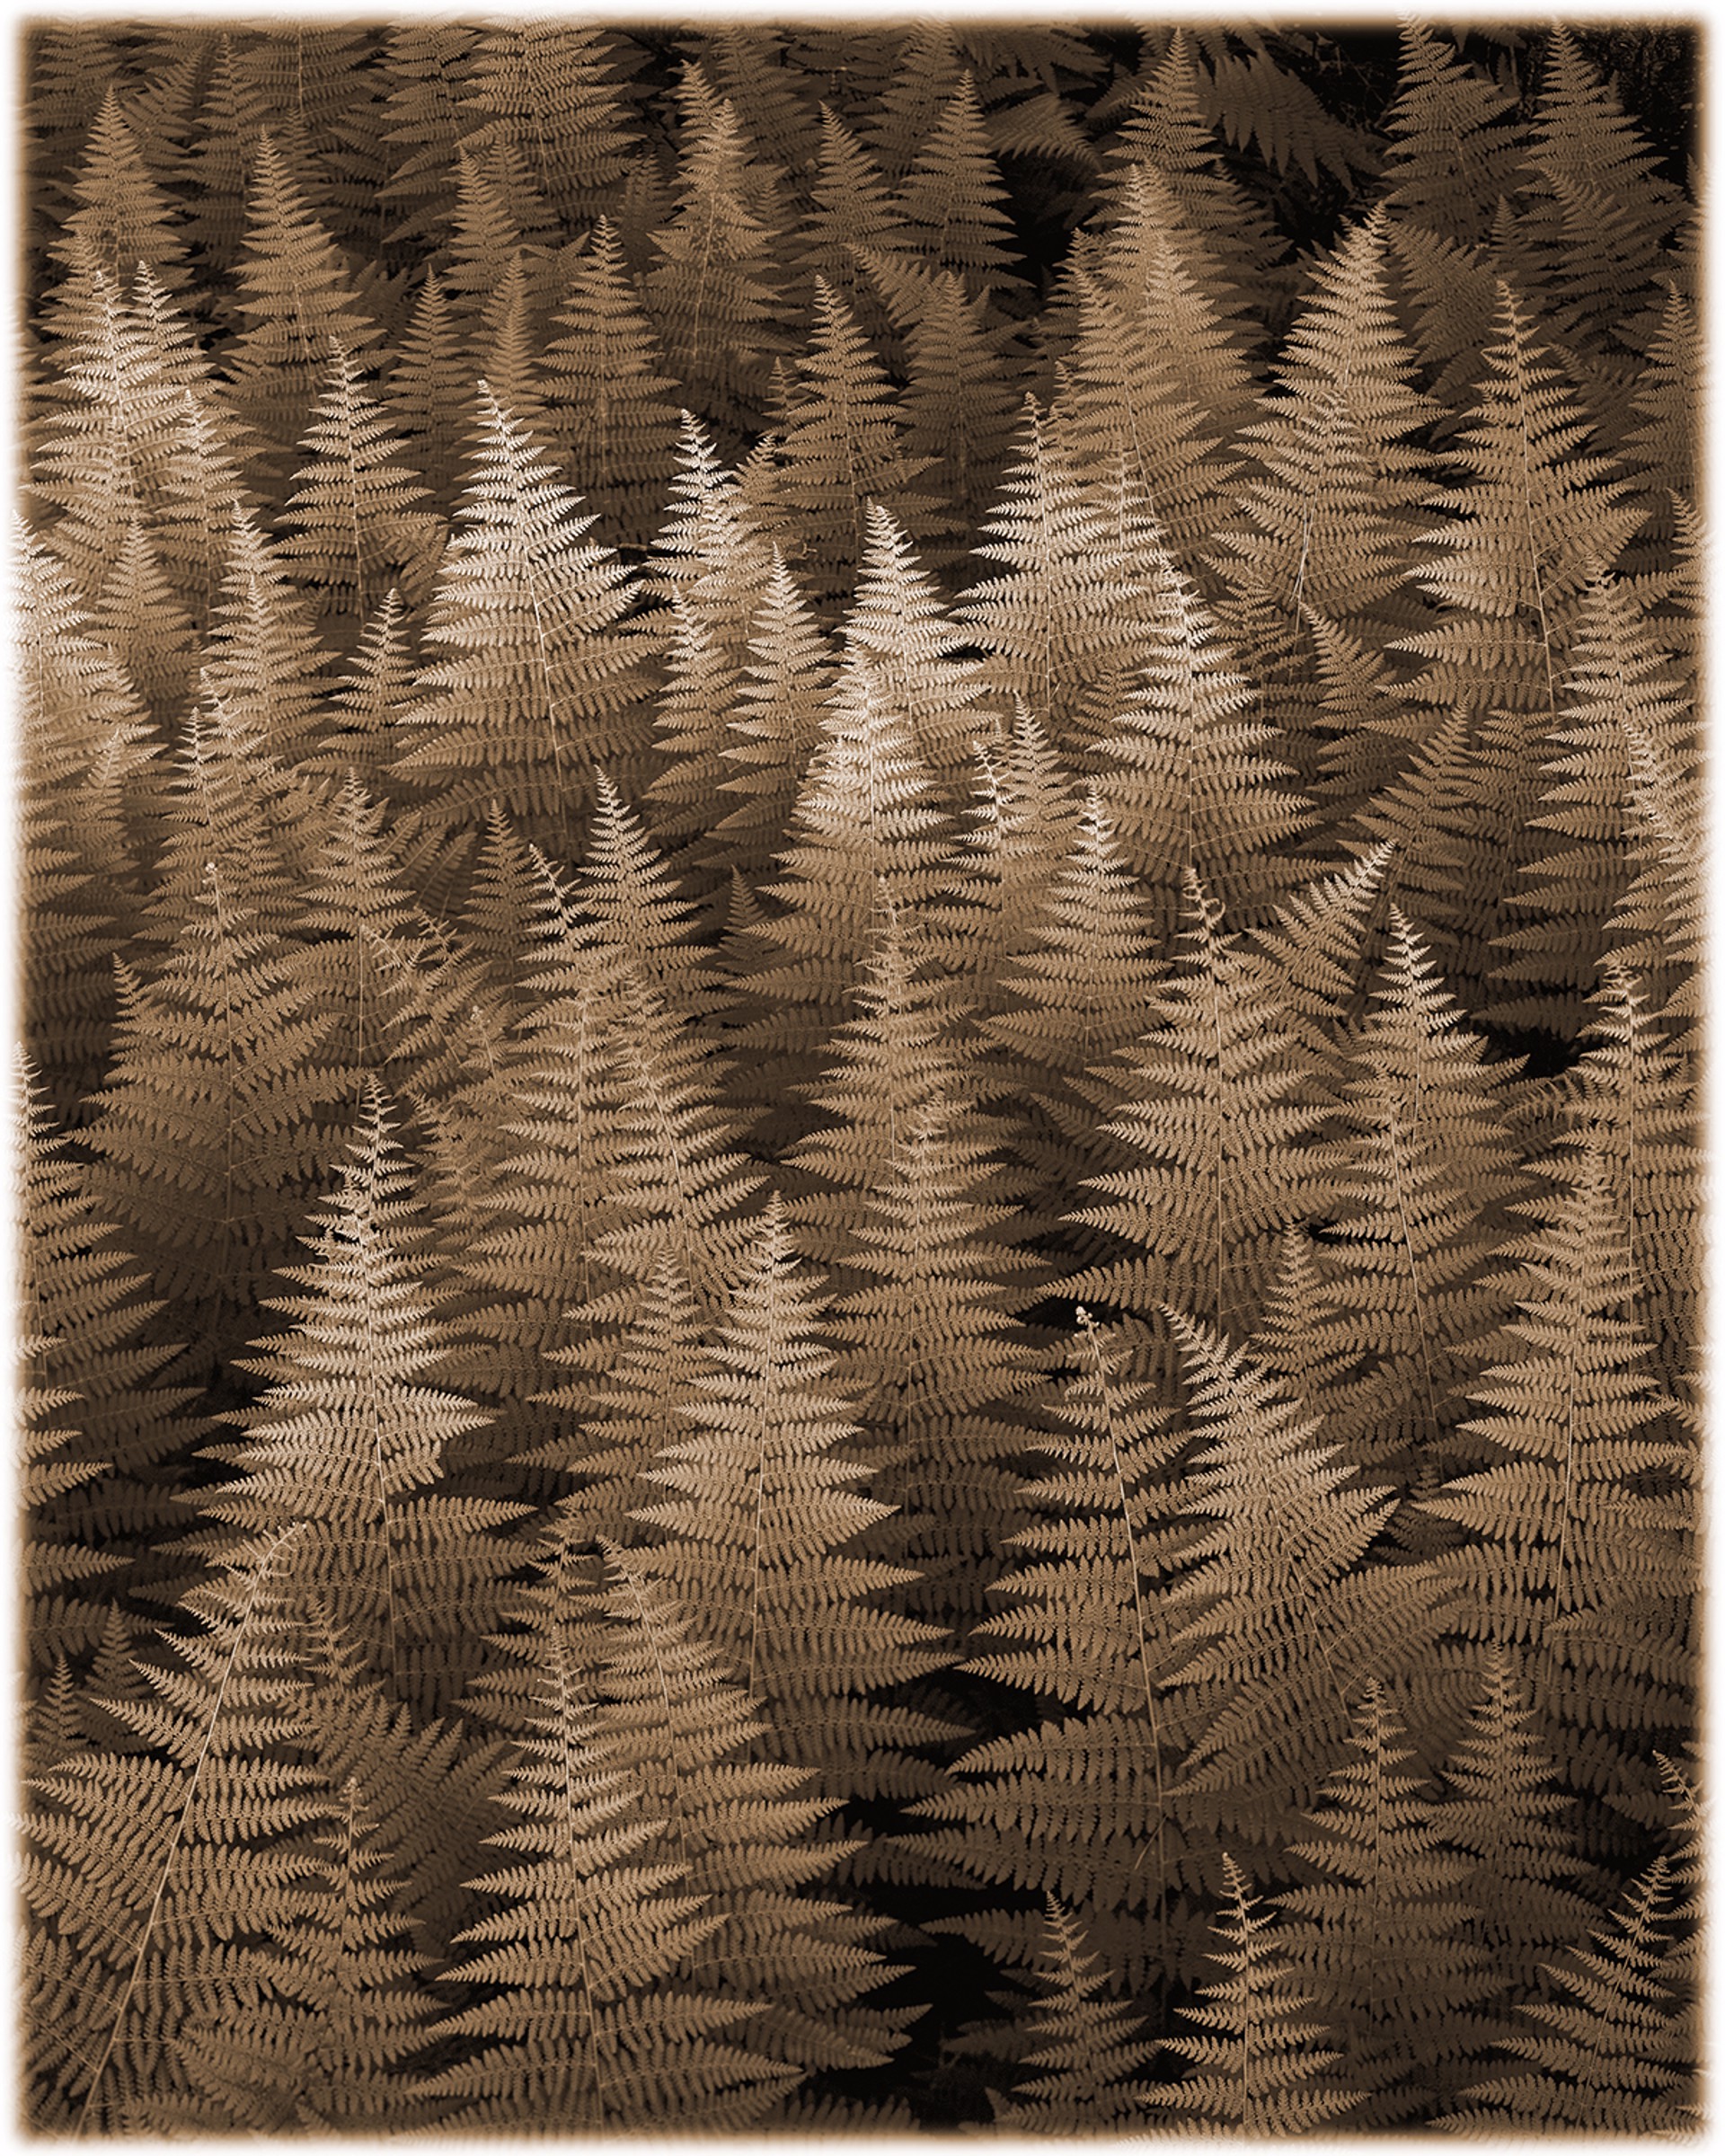 Ferns by James Bleecker